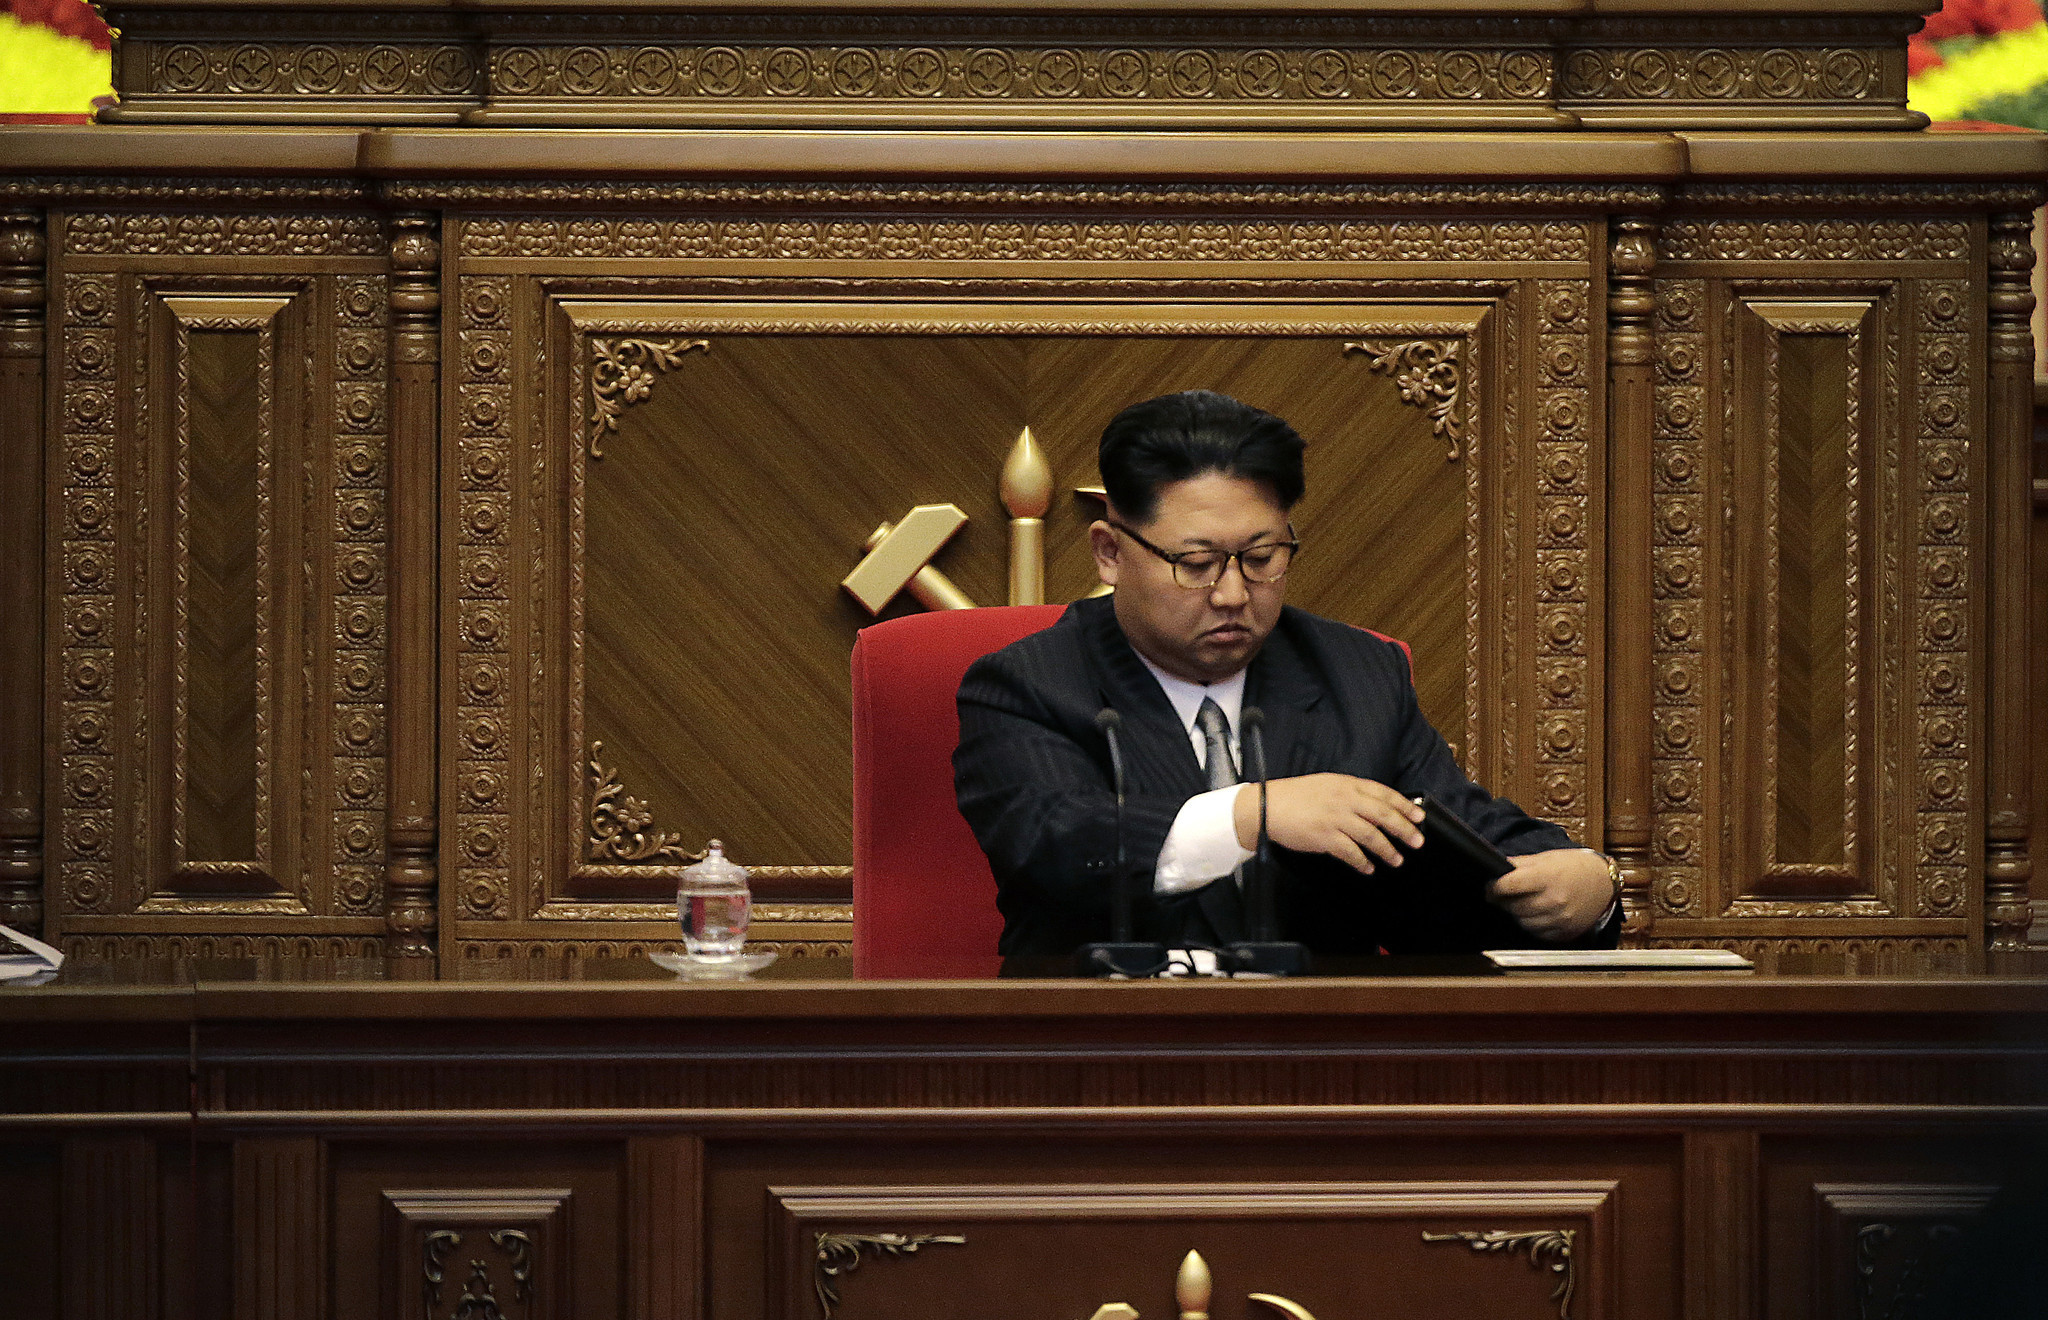  El régimen de terror de Kim Jong-un: 340 altos cargos ejecutados en 5 años